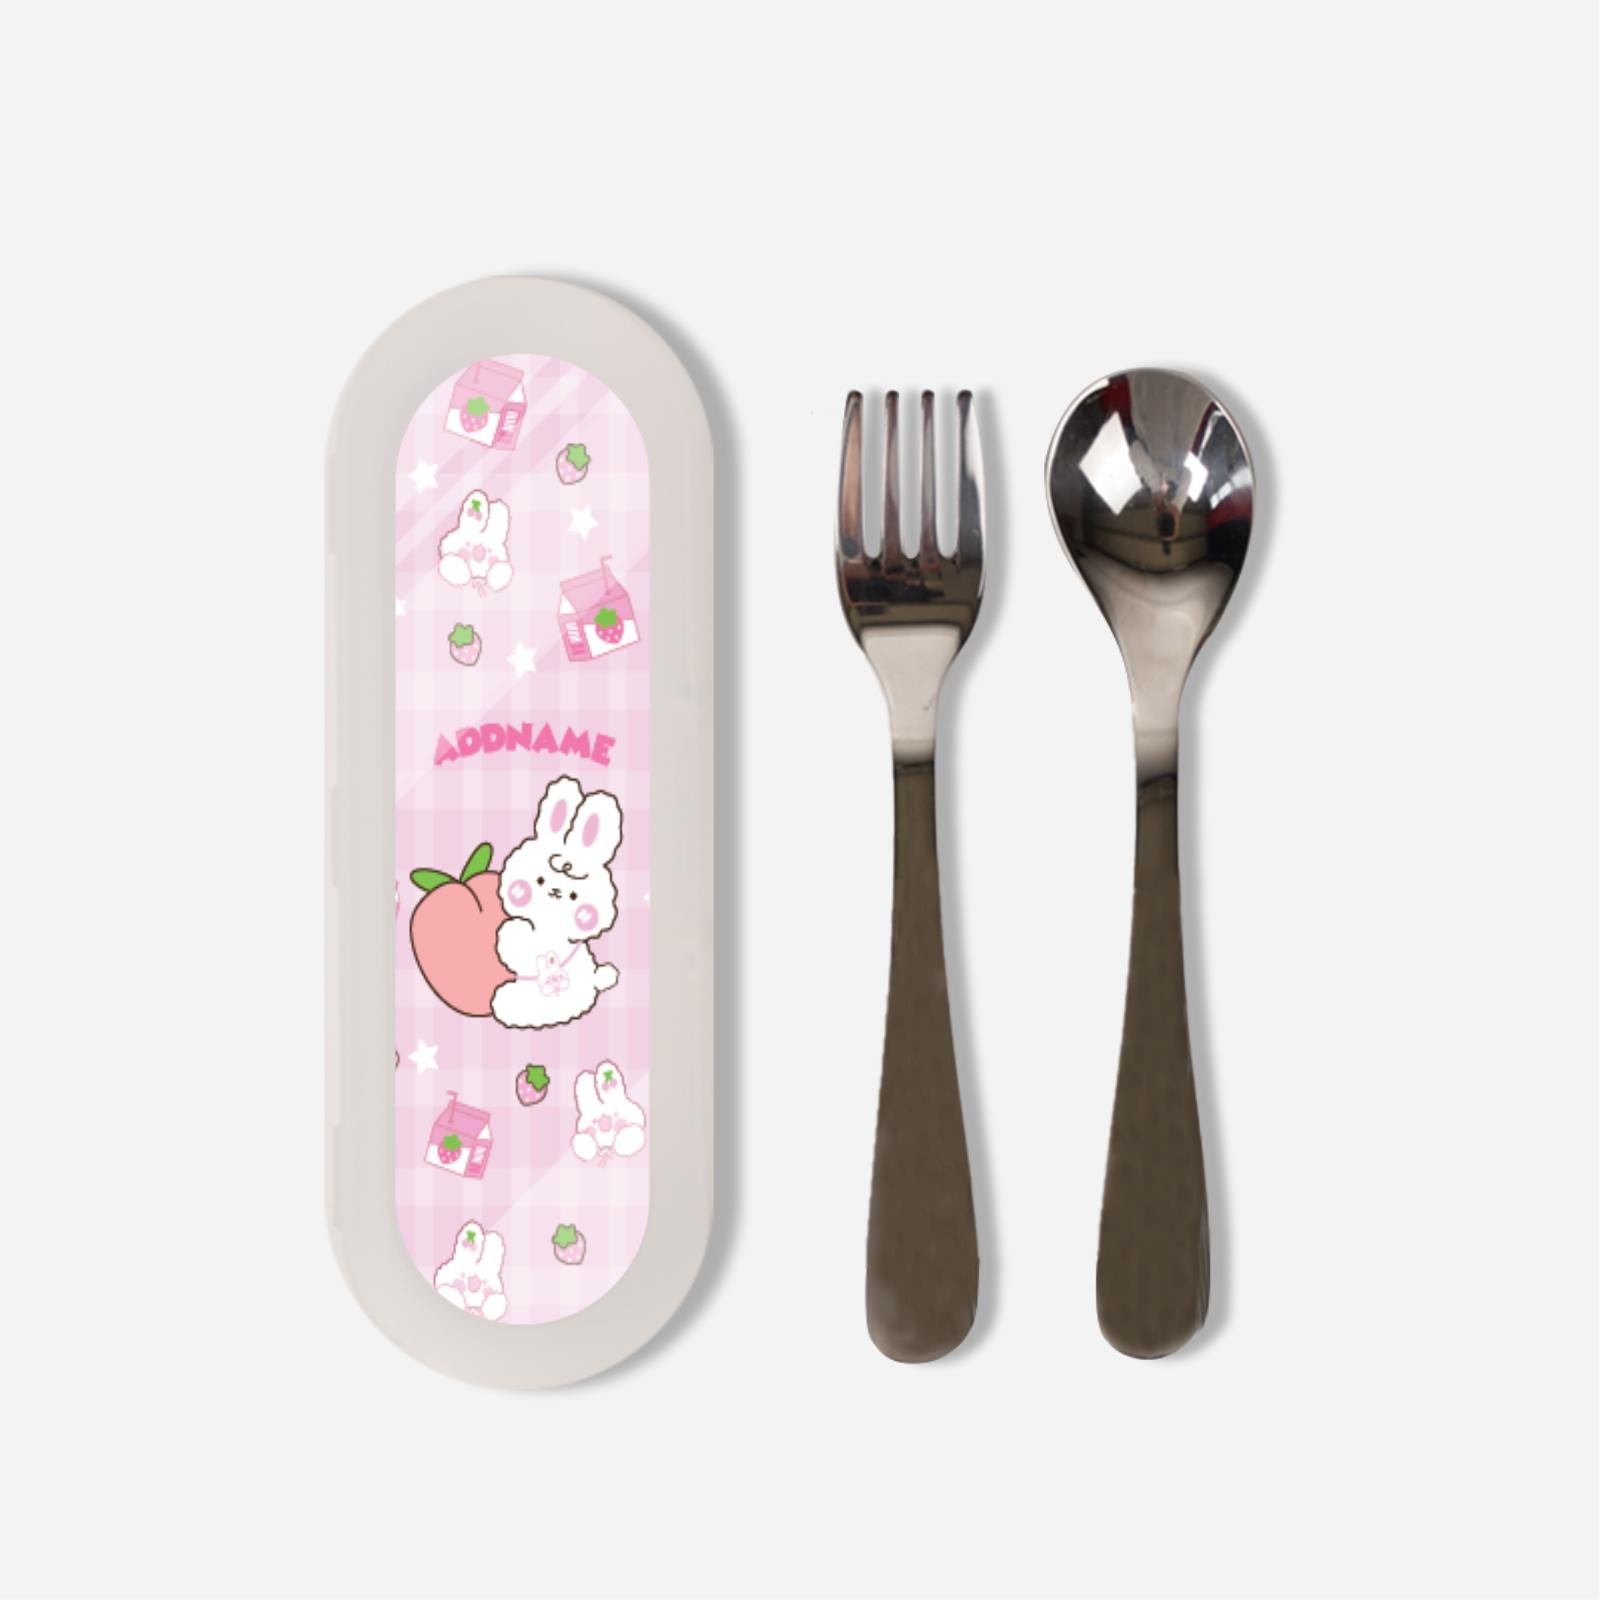 Cute Doodle Series Kids Cutlery Set - Pink Cute Bunny